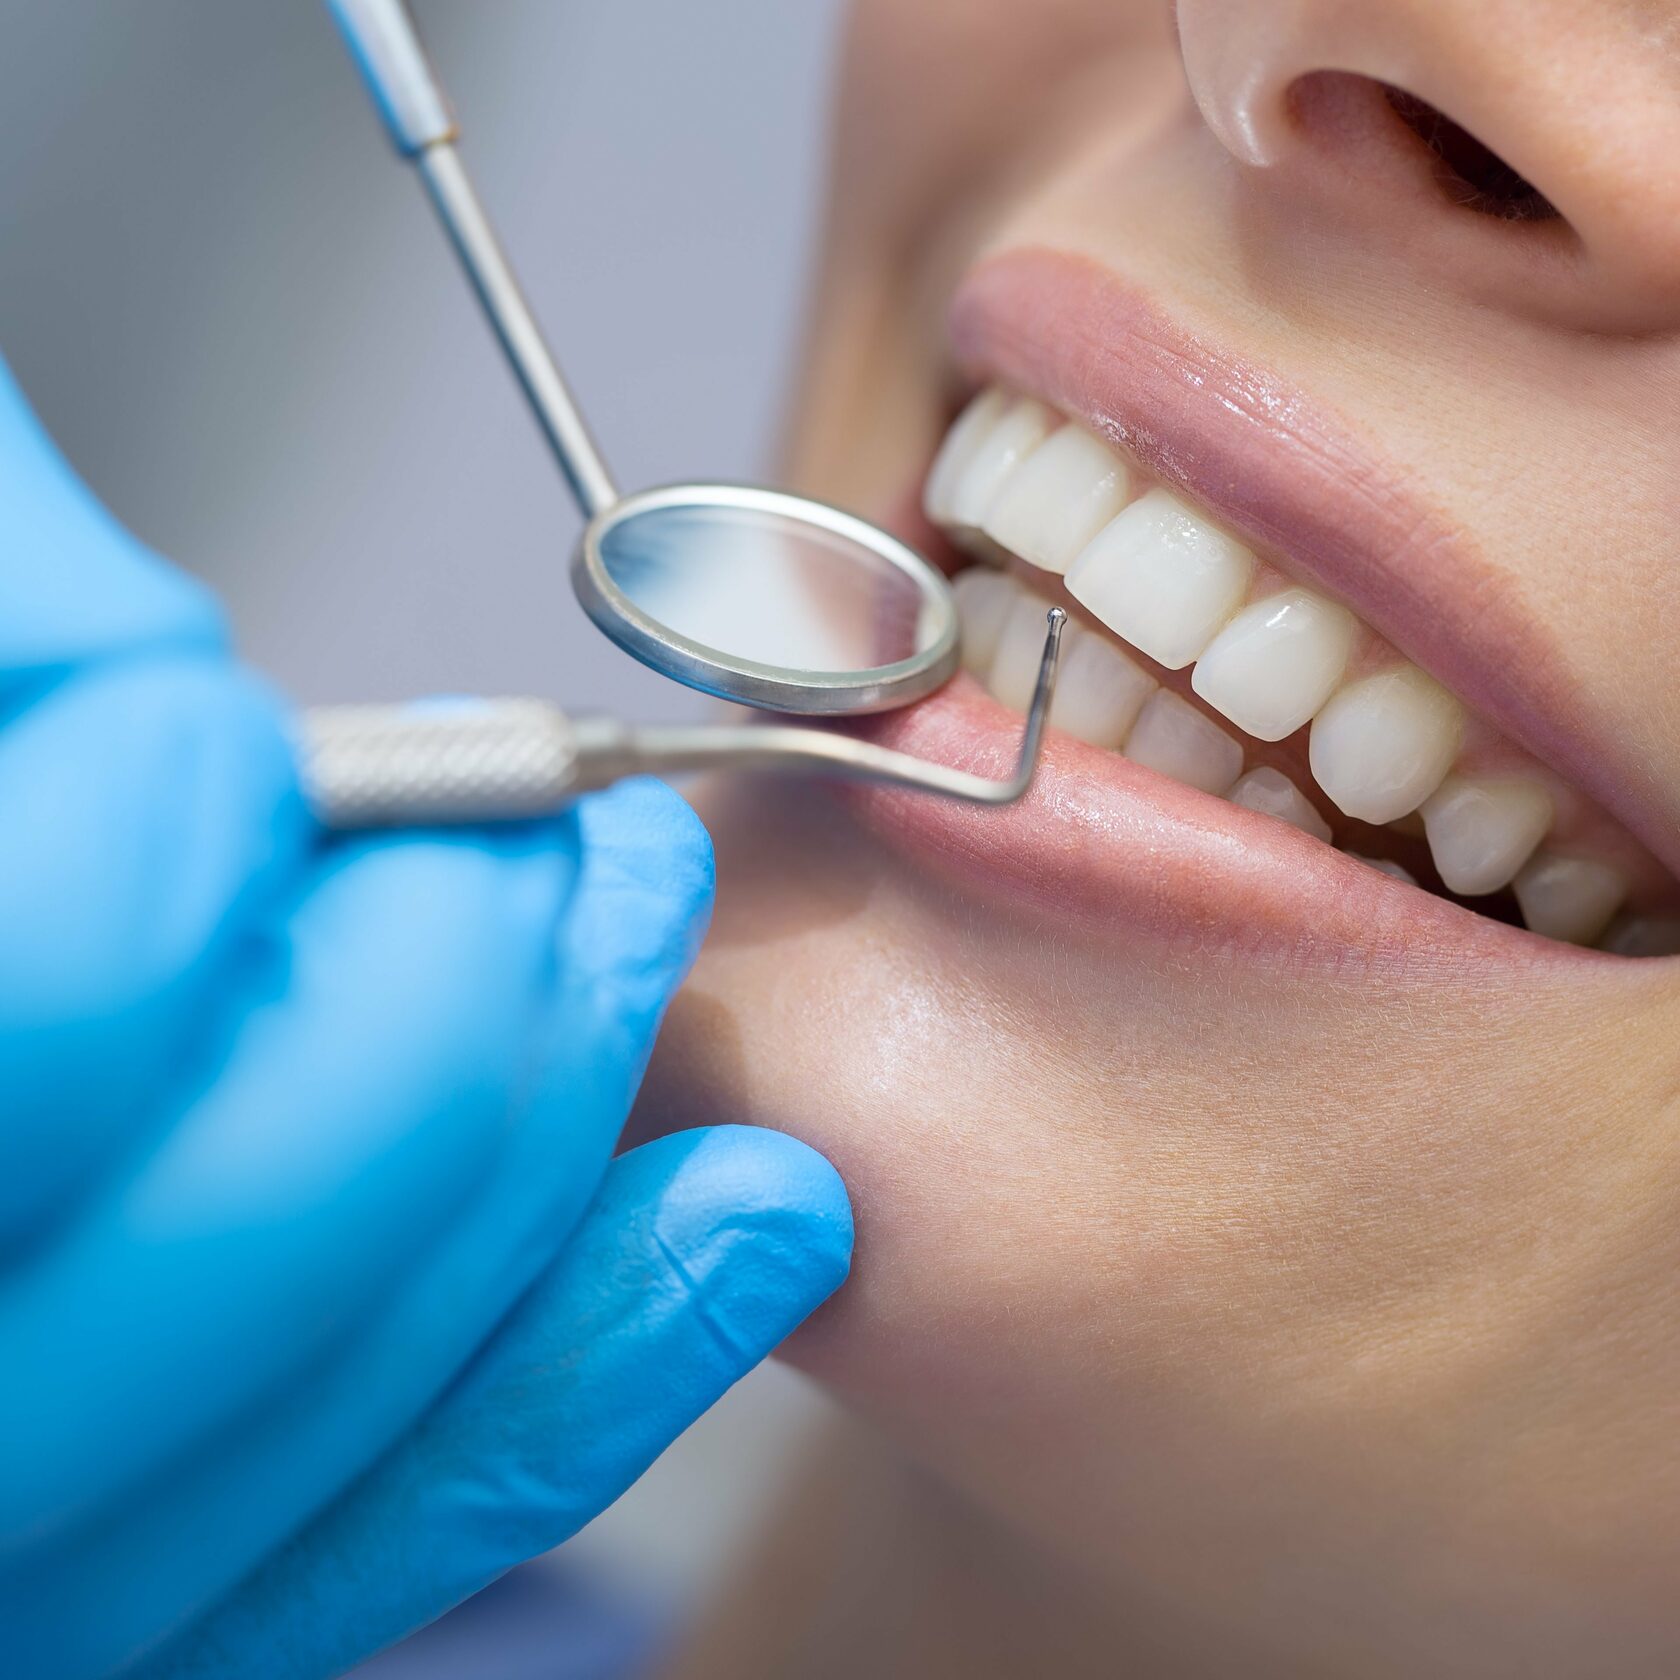 Восстановление полости рта. Профессиональная гигиена полости рта. Профессиональная гигиена полости рта в стоматологии. Красивые зубы стоматология. Сайт стоматологии.